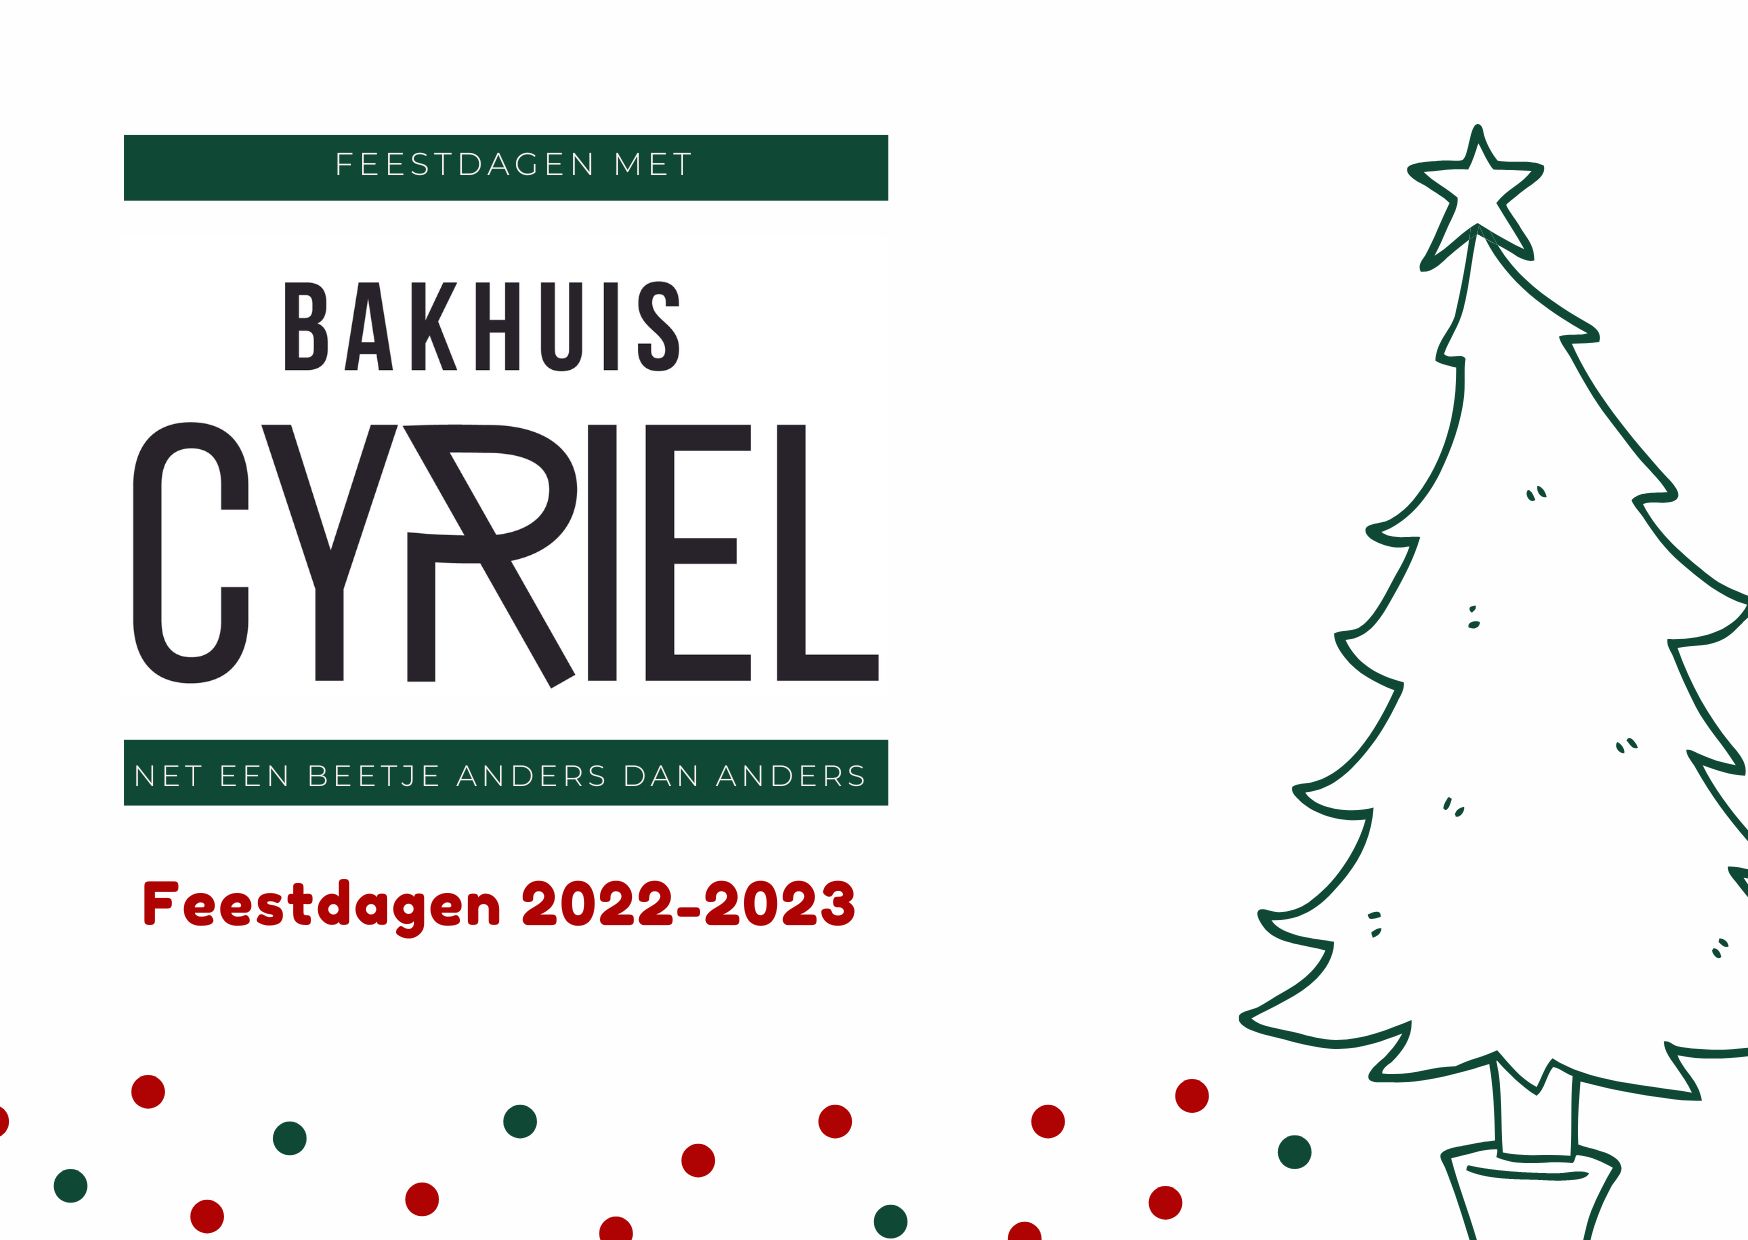 Bakhuis Cyriel: dat is kiezen voor traditie en ambacht, ook tijdens de feestdagen 2022-2023.